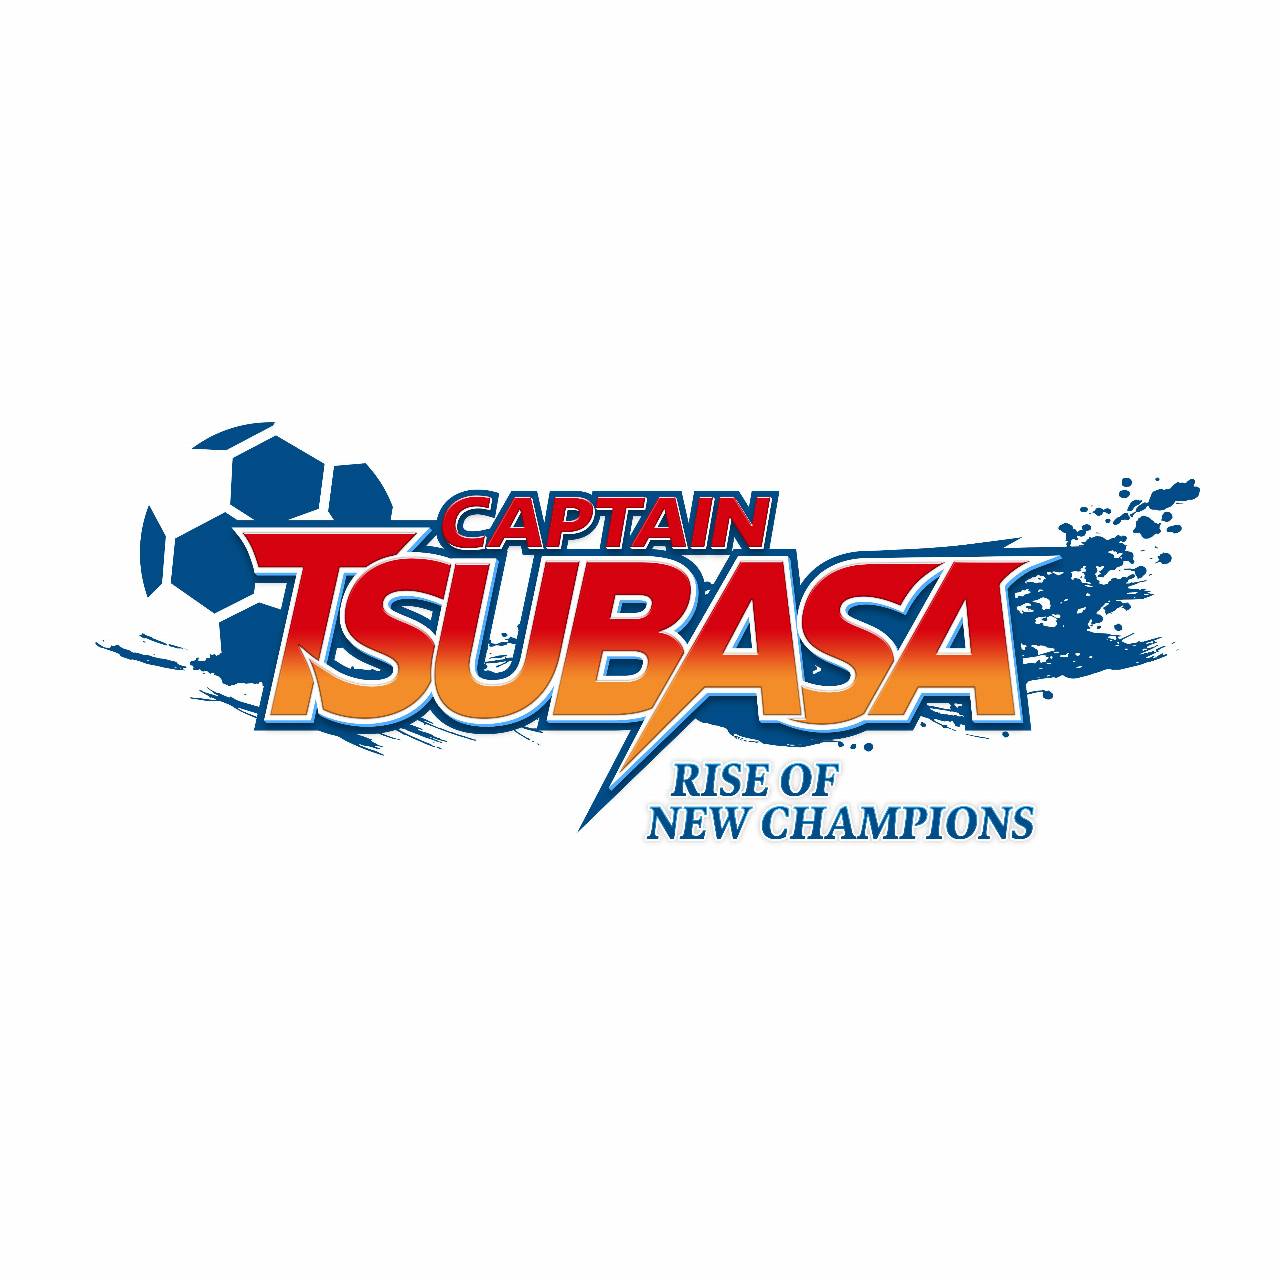 Captain Tsubasa: Rise of New Champions: Ecco la data di uscita